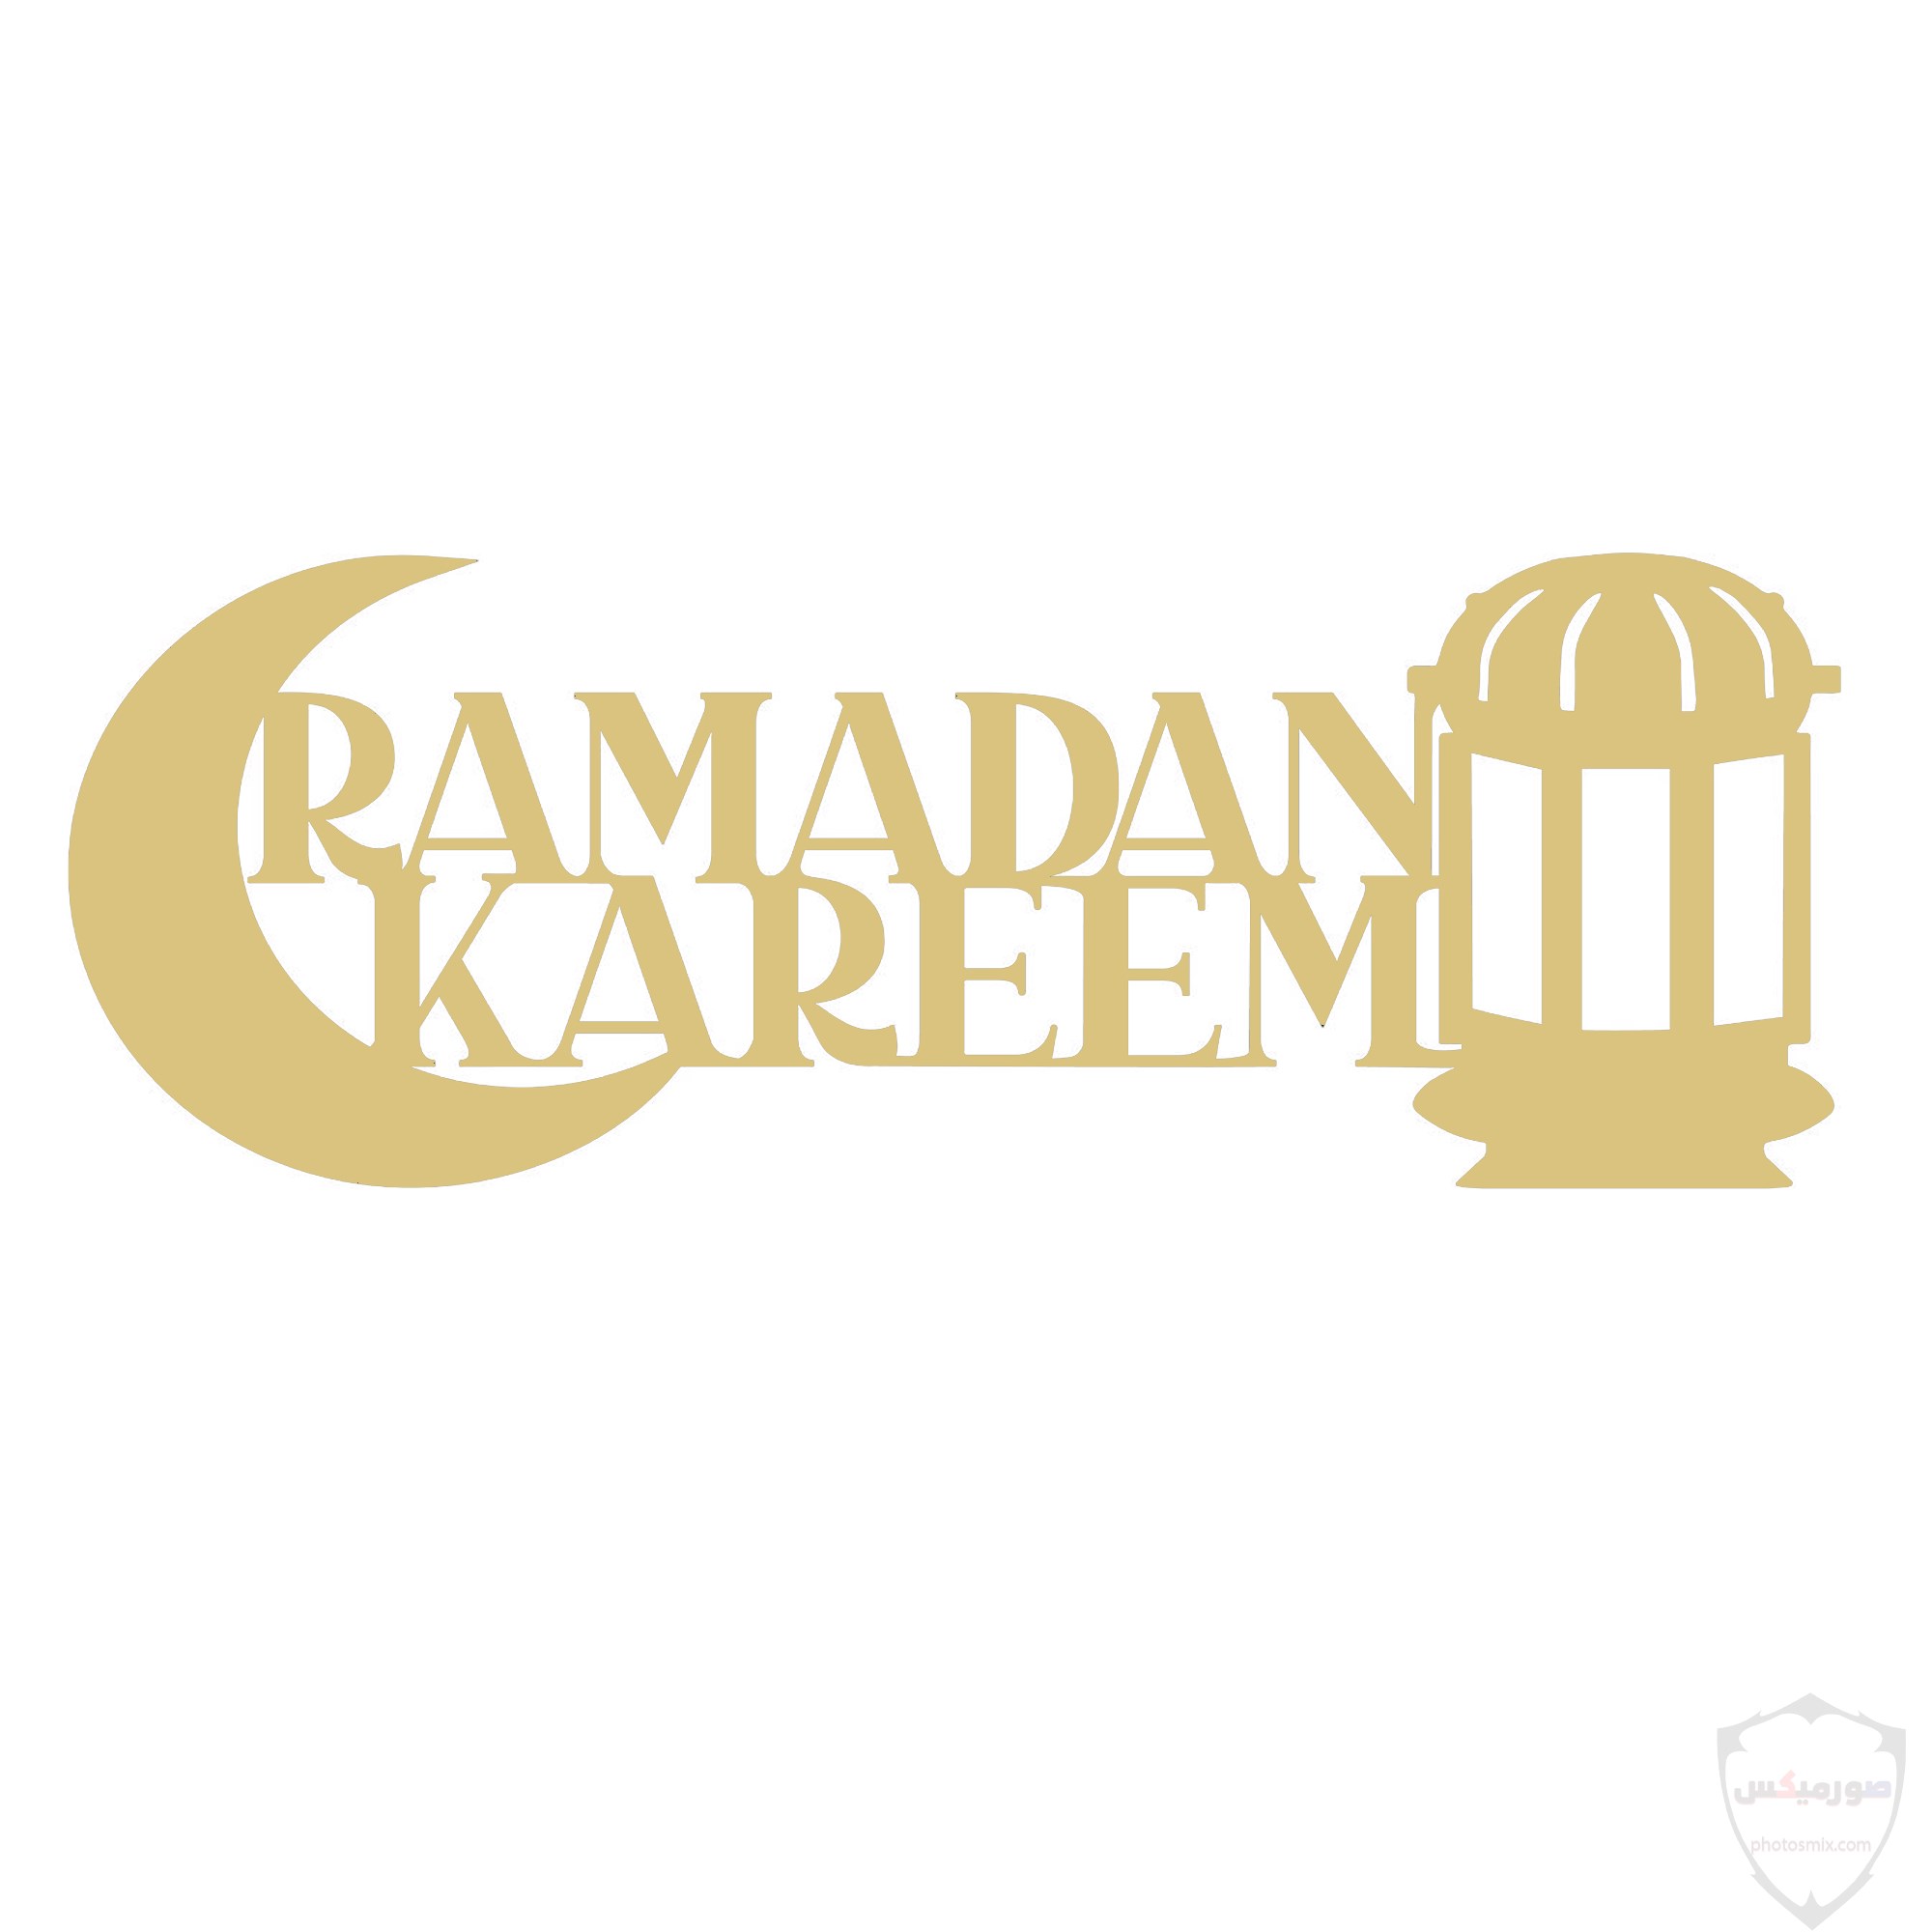 صور رمضان 2020 خلفيات صور رمضان 2020 3 1